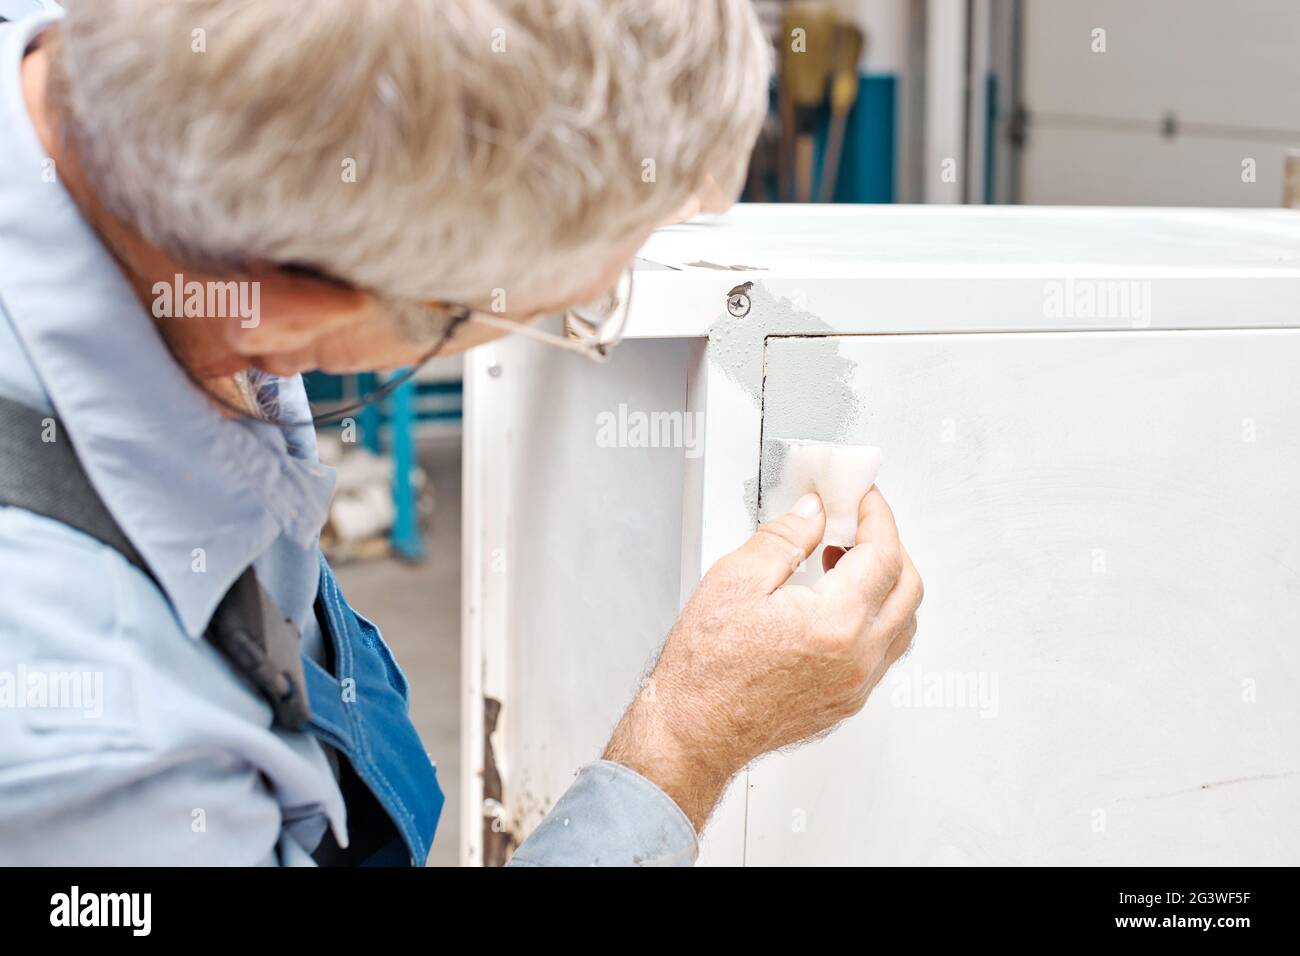 Un employé peint des produits métalliques. Un homme âgé tient une éponge en mousse dans sa main et peint le cabinet en blanc. Banque D'Images